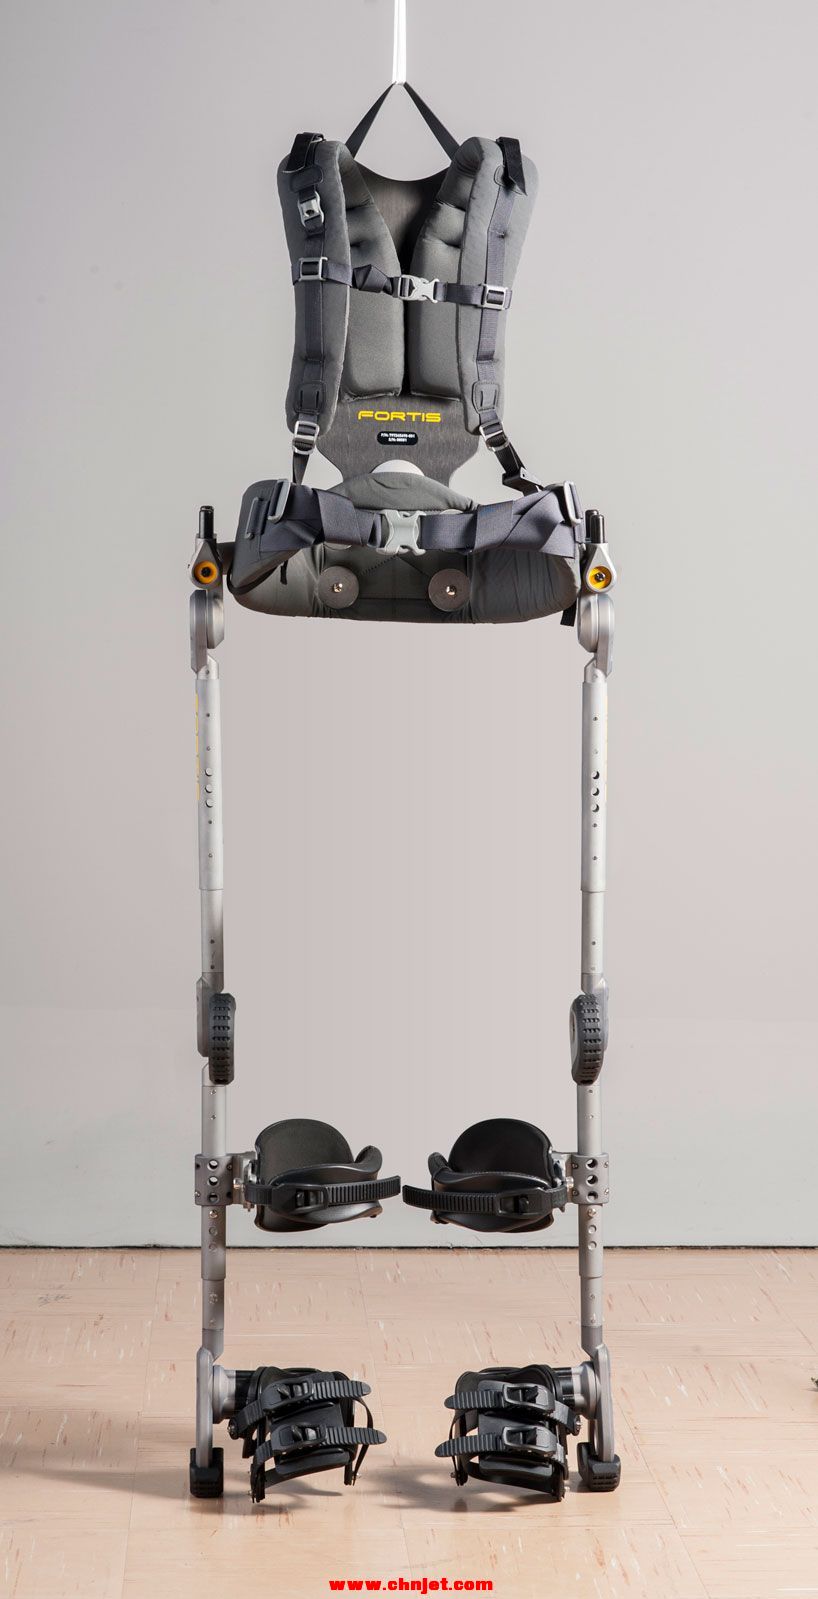 fortis-exoskeleton-US-navy-designboom03.jpg